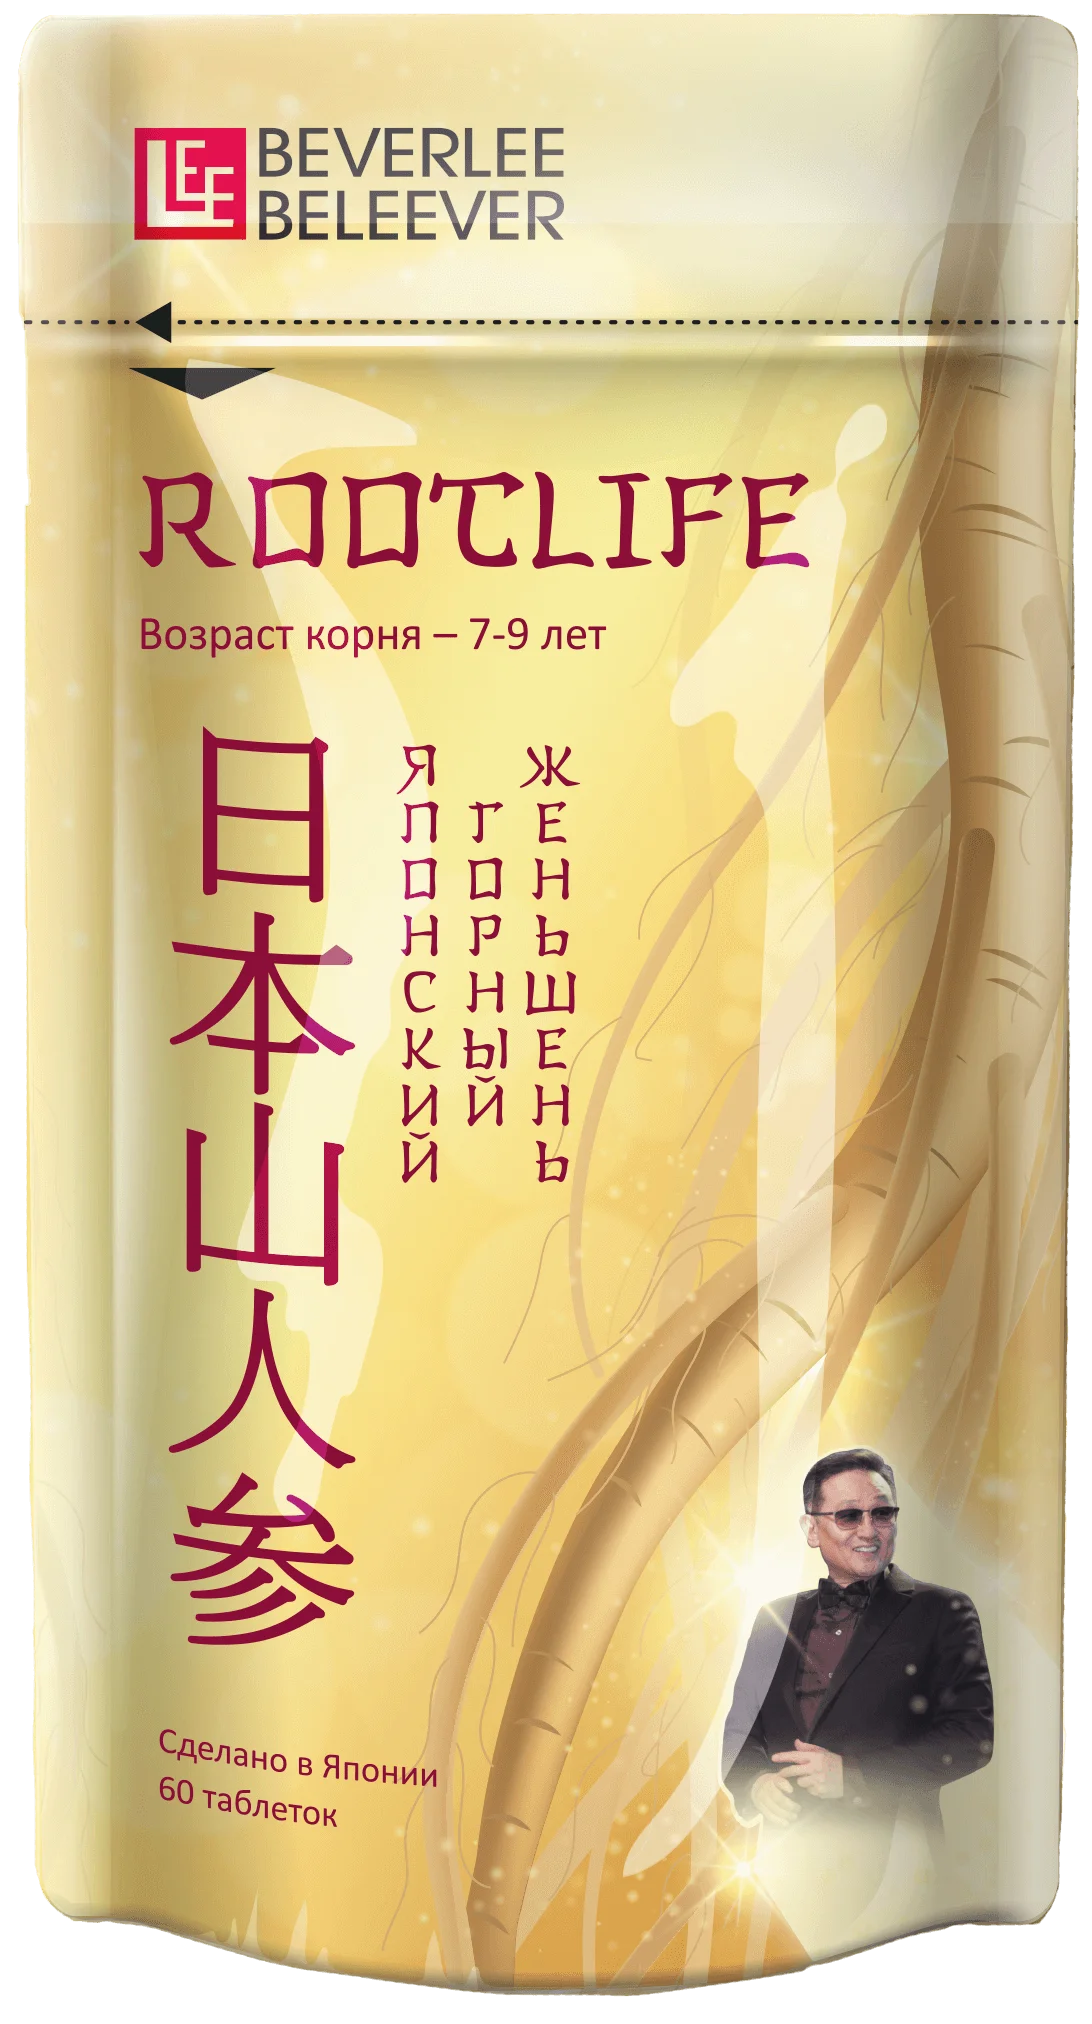 Японский горный женьшень, продукт RootLife (РутЛайф), Изготовитель: Shiseido Pharmaceutical Co., Ltd., Япония. Купить в Москве и области по официальной цене компании BEVERLee — beLEEver (Беверли - Беливер).